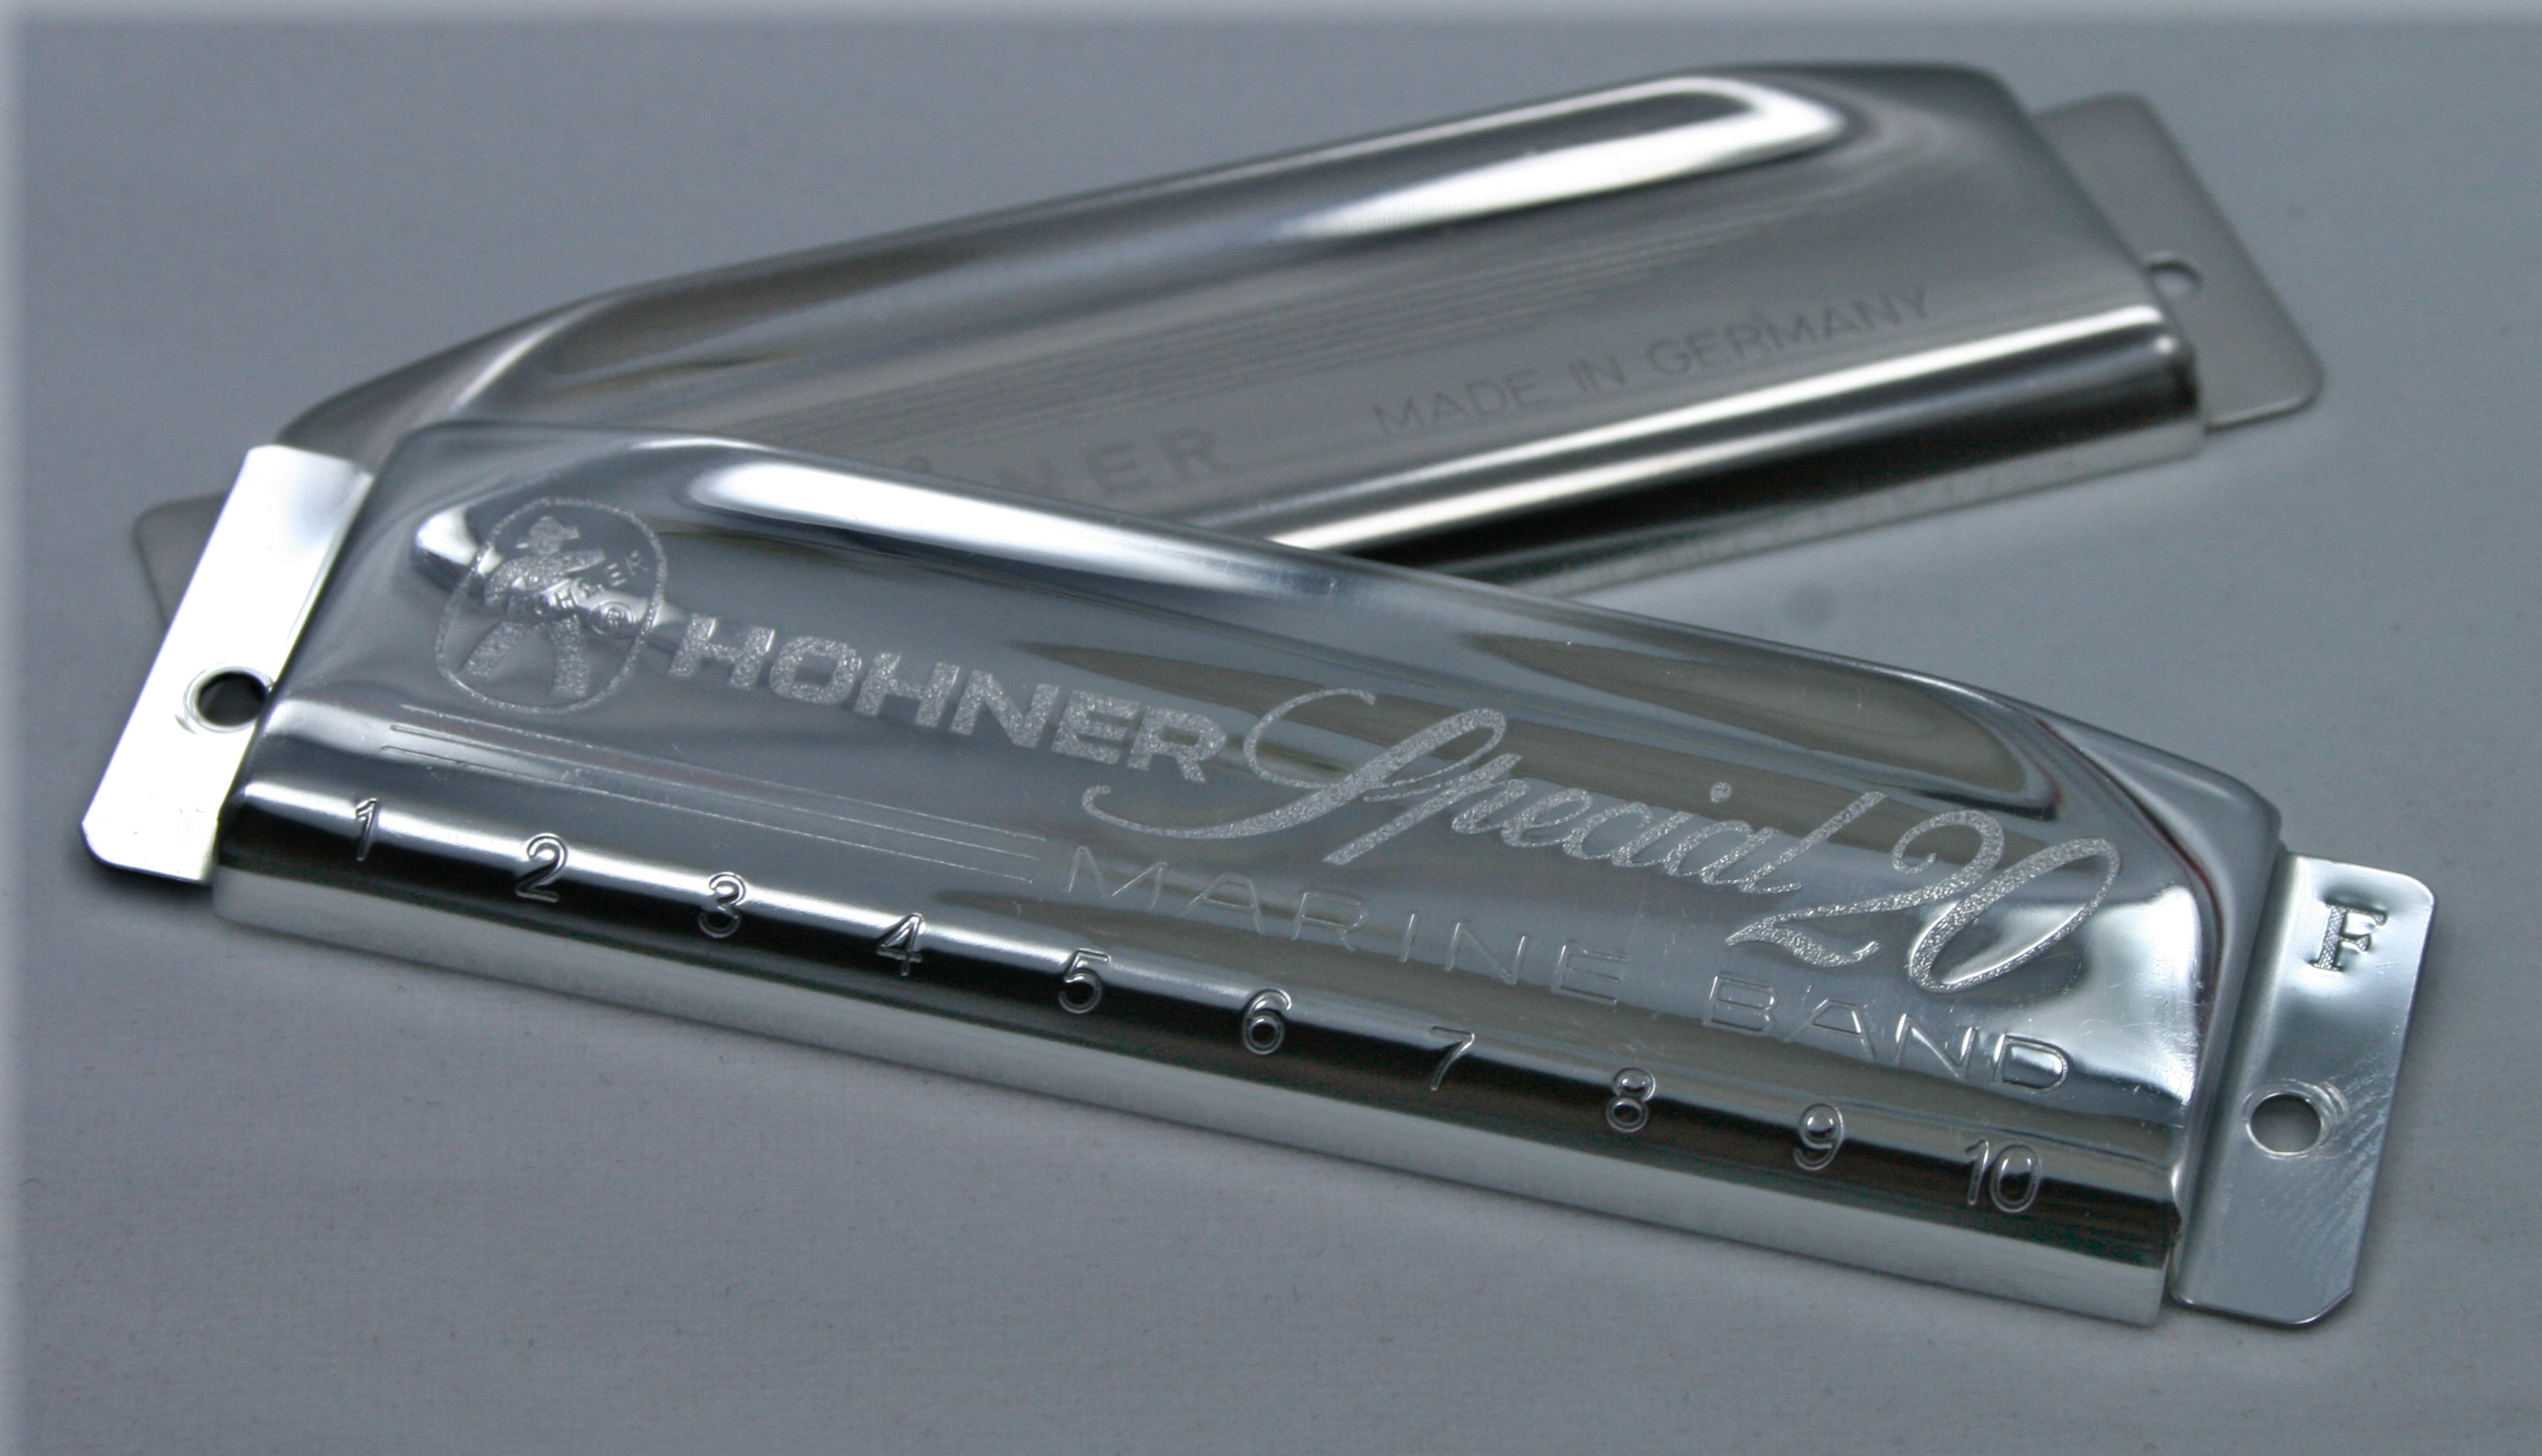 Hohner Special 20 Harmonica Cover Plates - RW Harmonicas